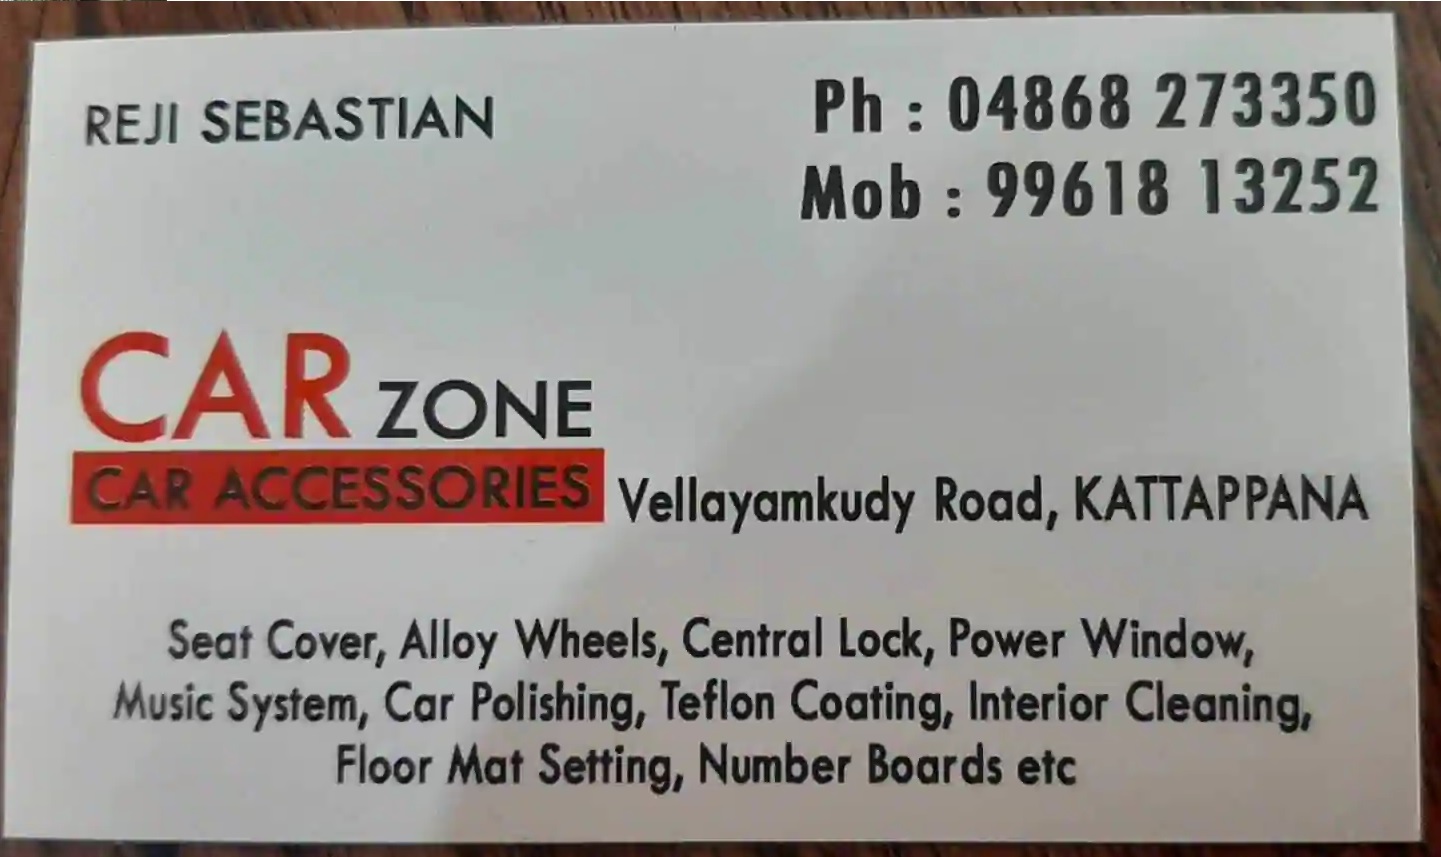 Carzone Car Accessories, ACCESSORIES,  service in Kattappana, Idukki